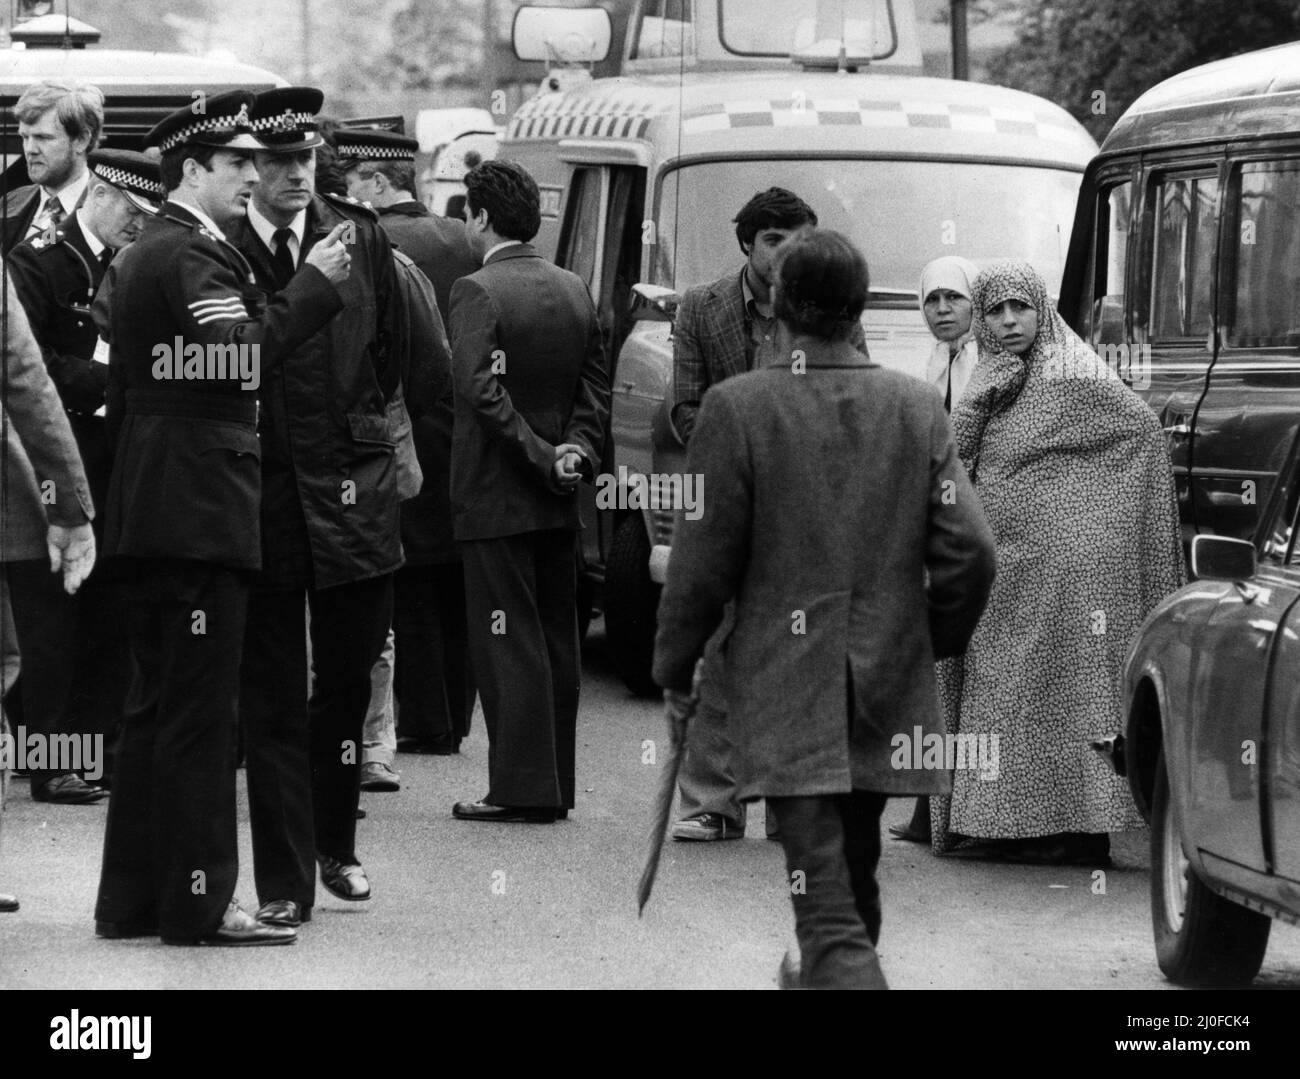 Am ersten Tag der Belagerung der iranischen Botschaft in London stürmten sechs bewaffnete Männer der iranischen extremistischen Gruppe „Demokratische Revolutionsbewegung zur Befreiung Arabistans“ das Gebäude und nahmen 26 Geiseln, bevor die SAS die Botschaft zurückeroberten und die Geiseln befreiten. Zwei der Frauen, die die Botschaft bei Beginn der Belagerung aufstellten, wurden vor dem 30.. April 1980 mit Polizeibeamten fotografiert. Stockfoto